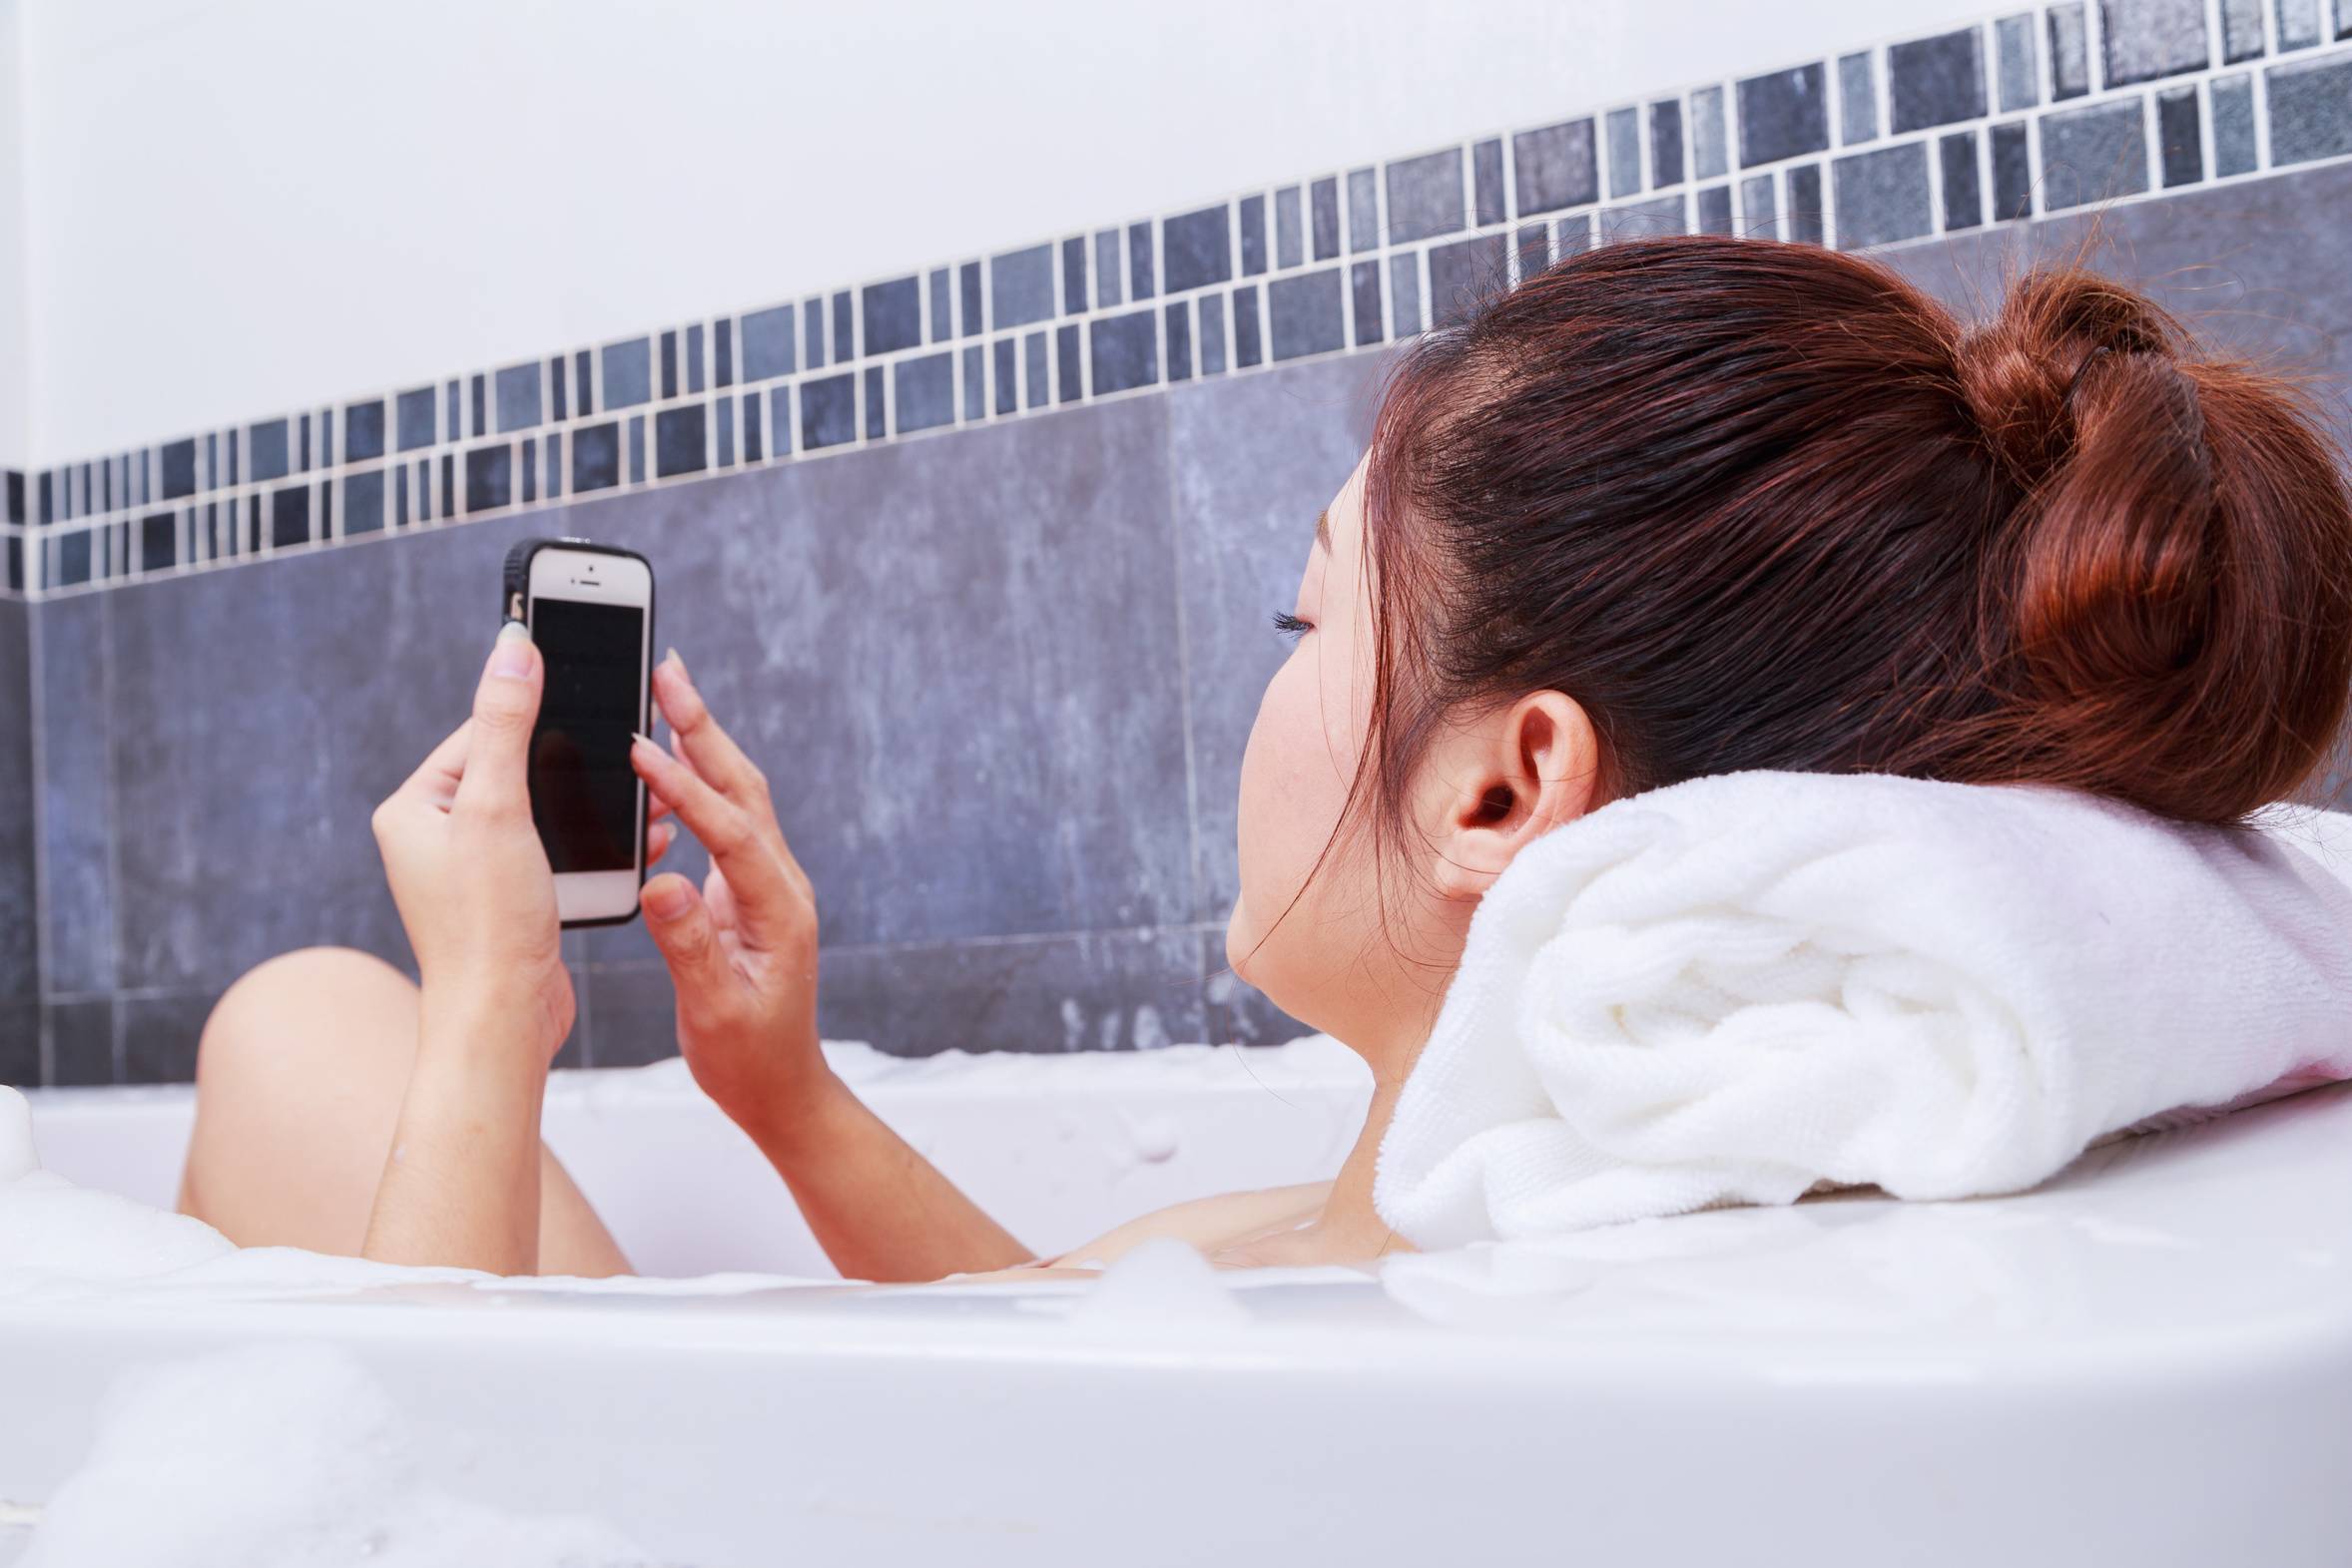 Что будет если уронить телефон на зарядке в ванну? - блог про компьютеры и их настройку